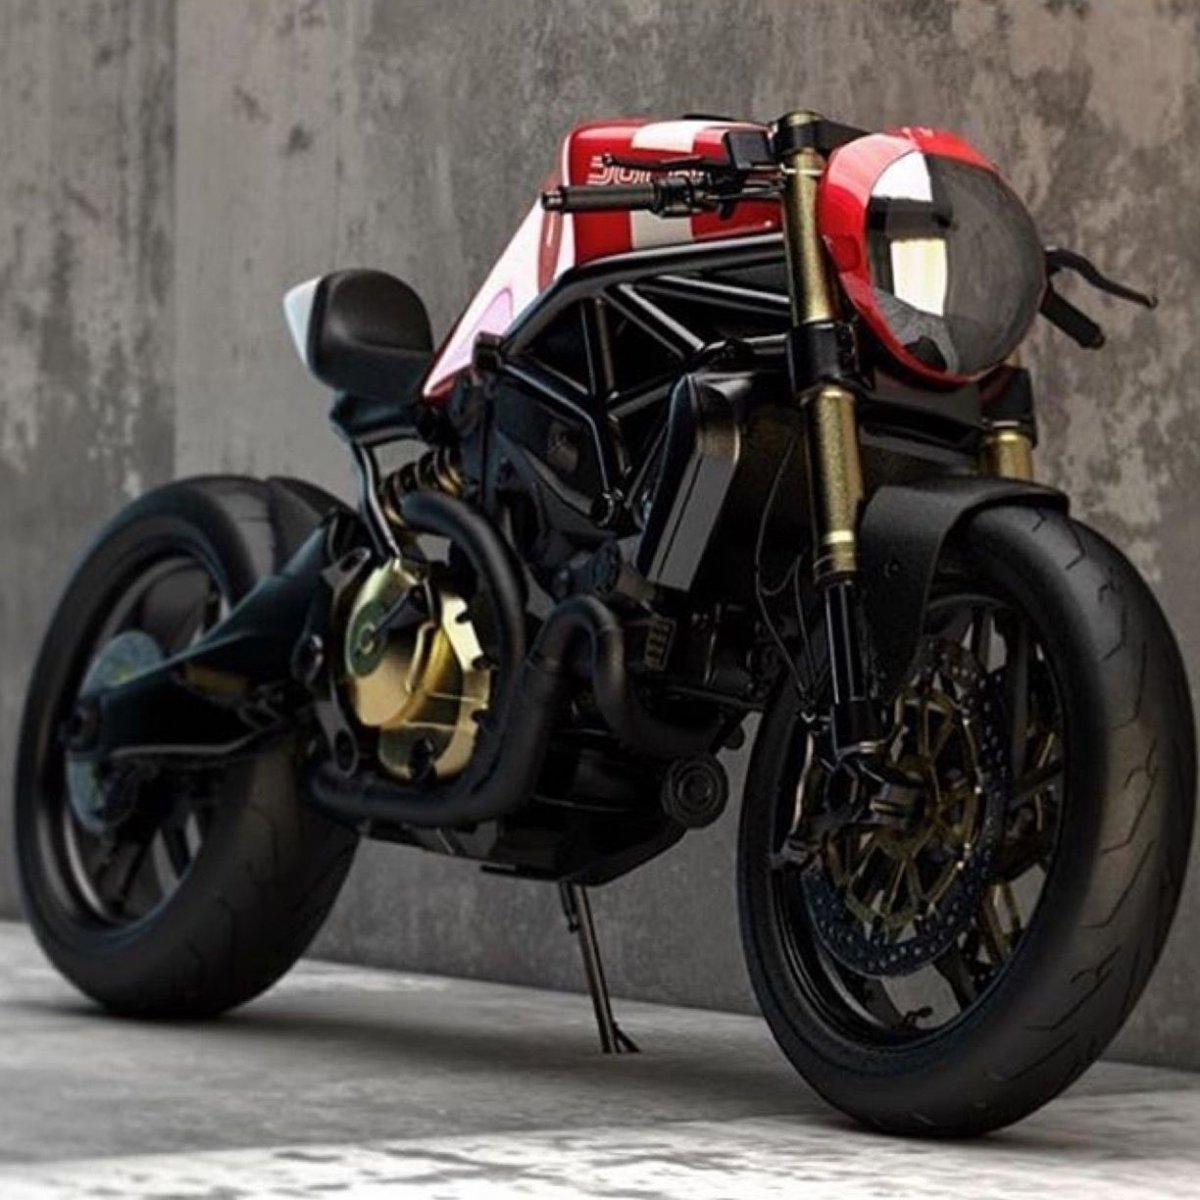 Ducati Monster 696 Cafe Racer